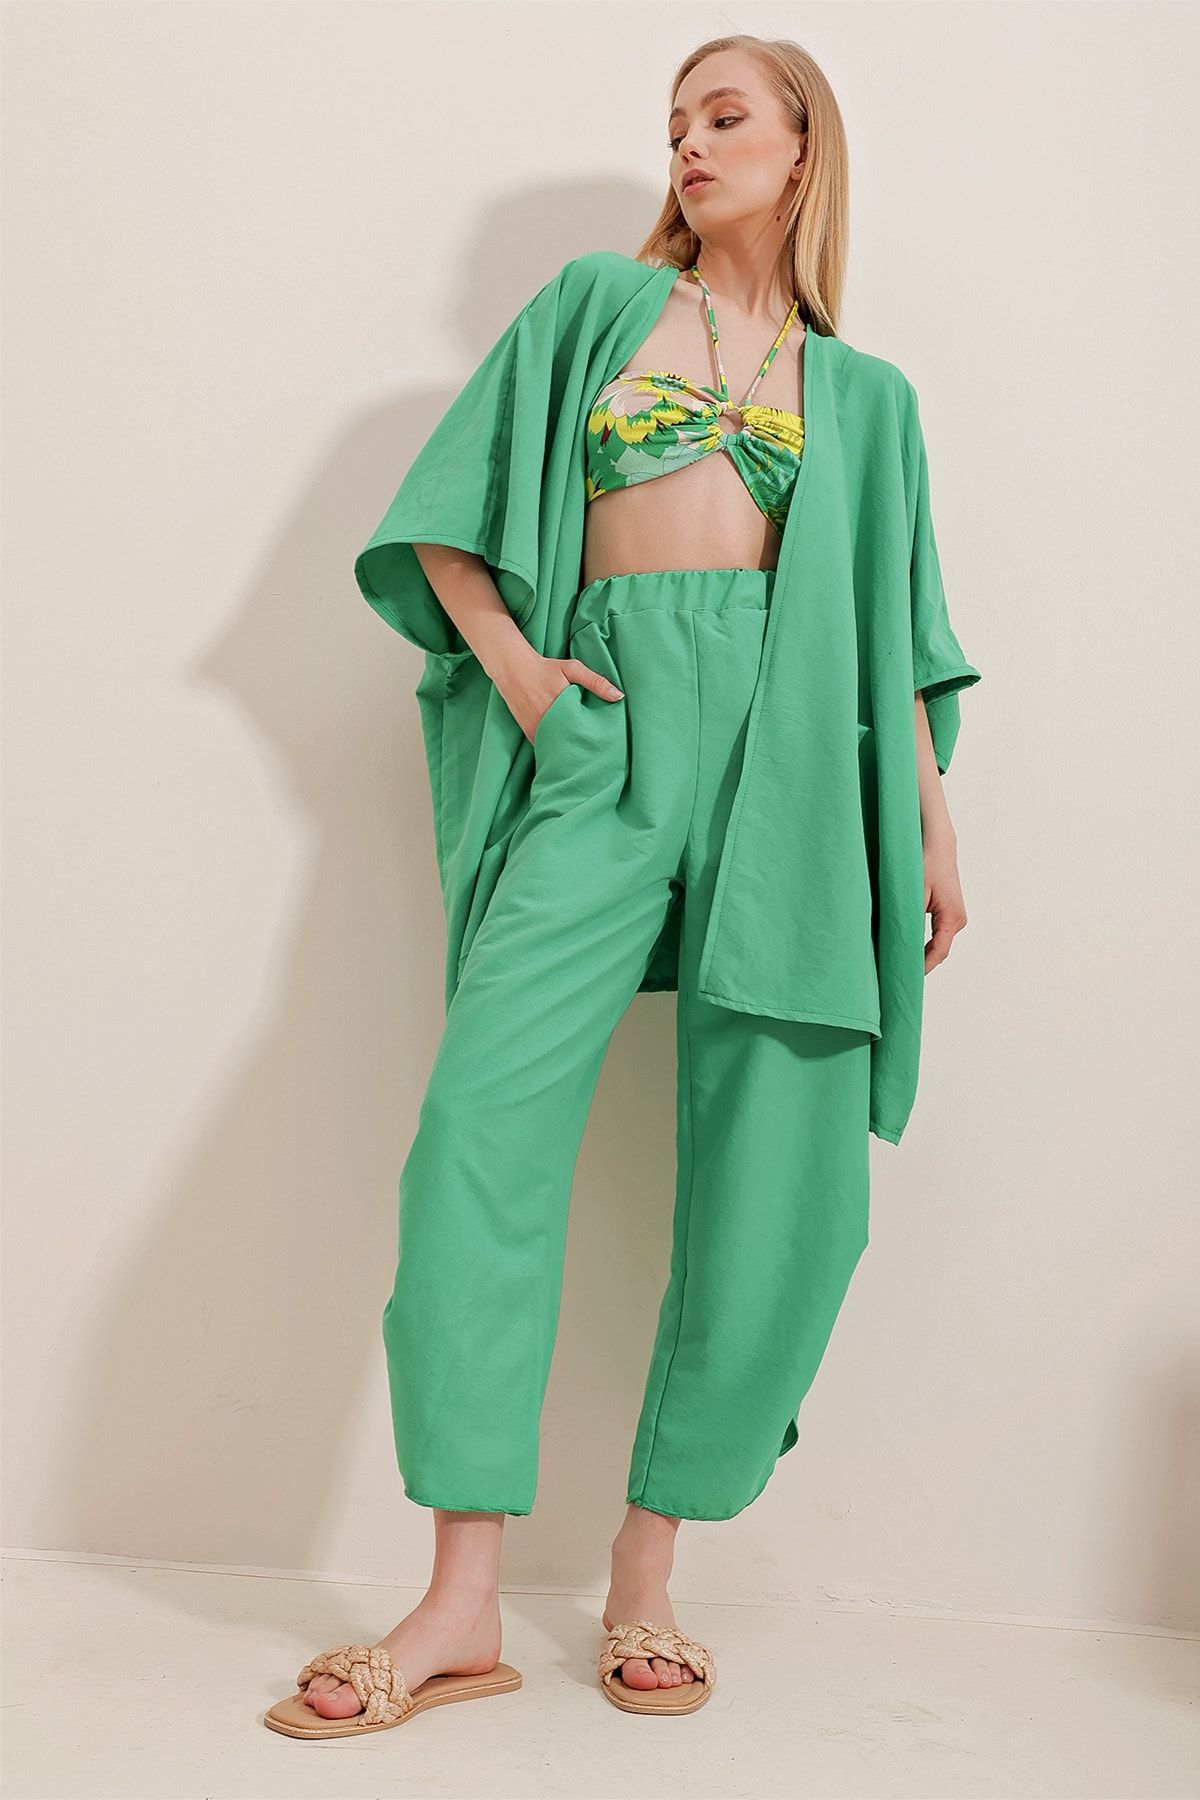 Trend Alaçatı Stili Kadın Yeşil Paçası Yırtmaçlı Kendinden Dokulu Pantolon Ve Ceket İkili Takım ALC-752-001